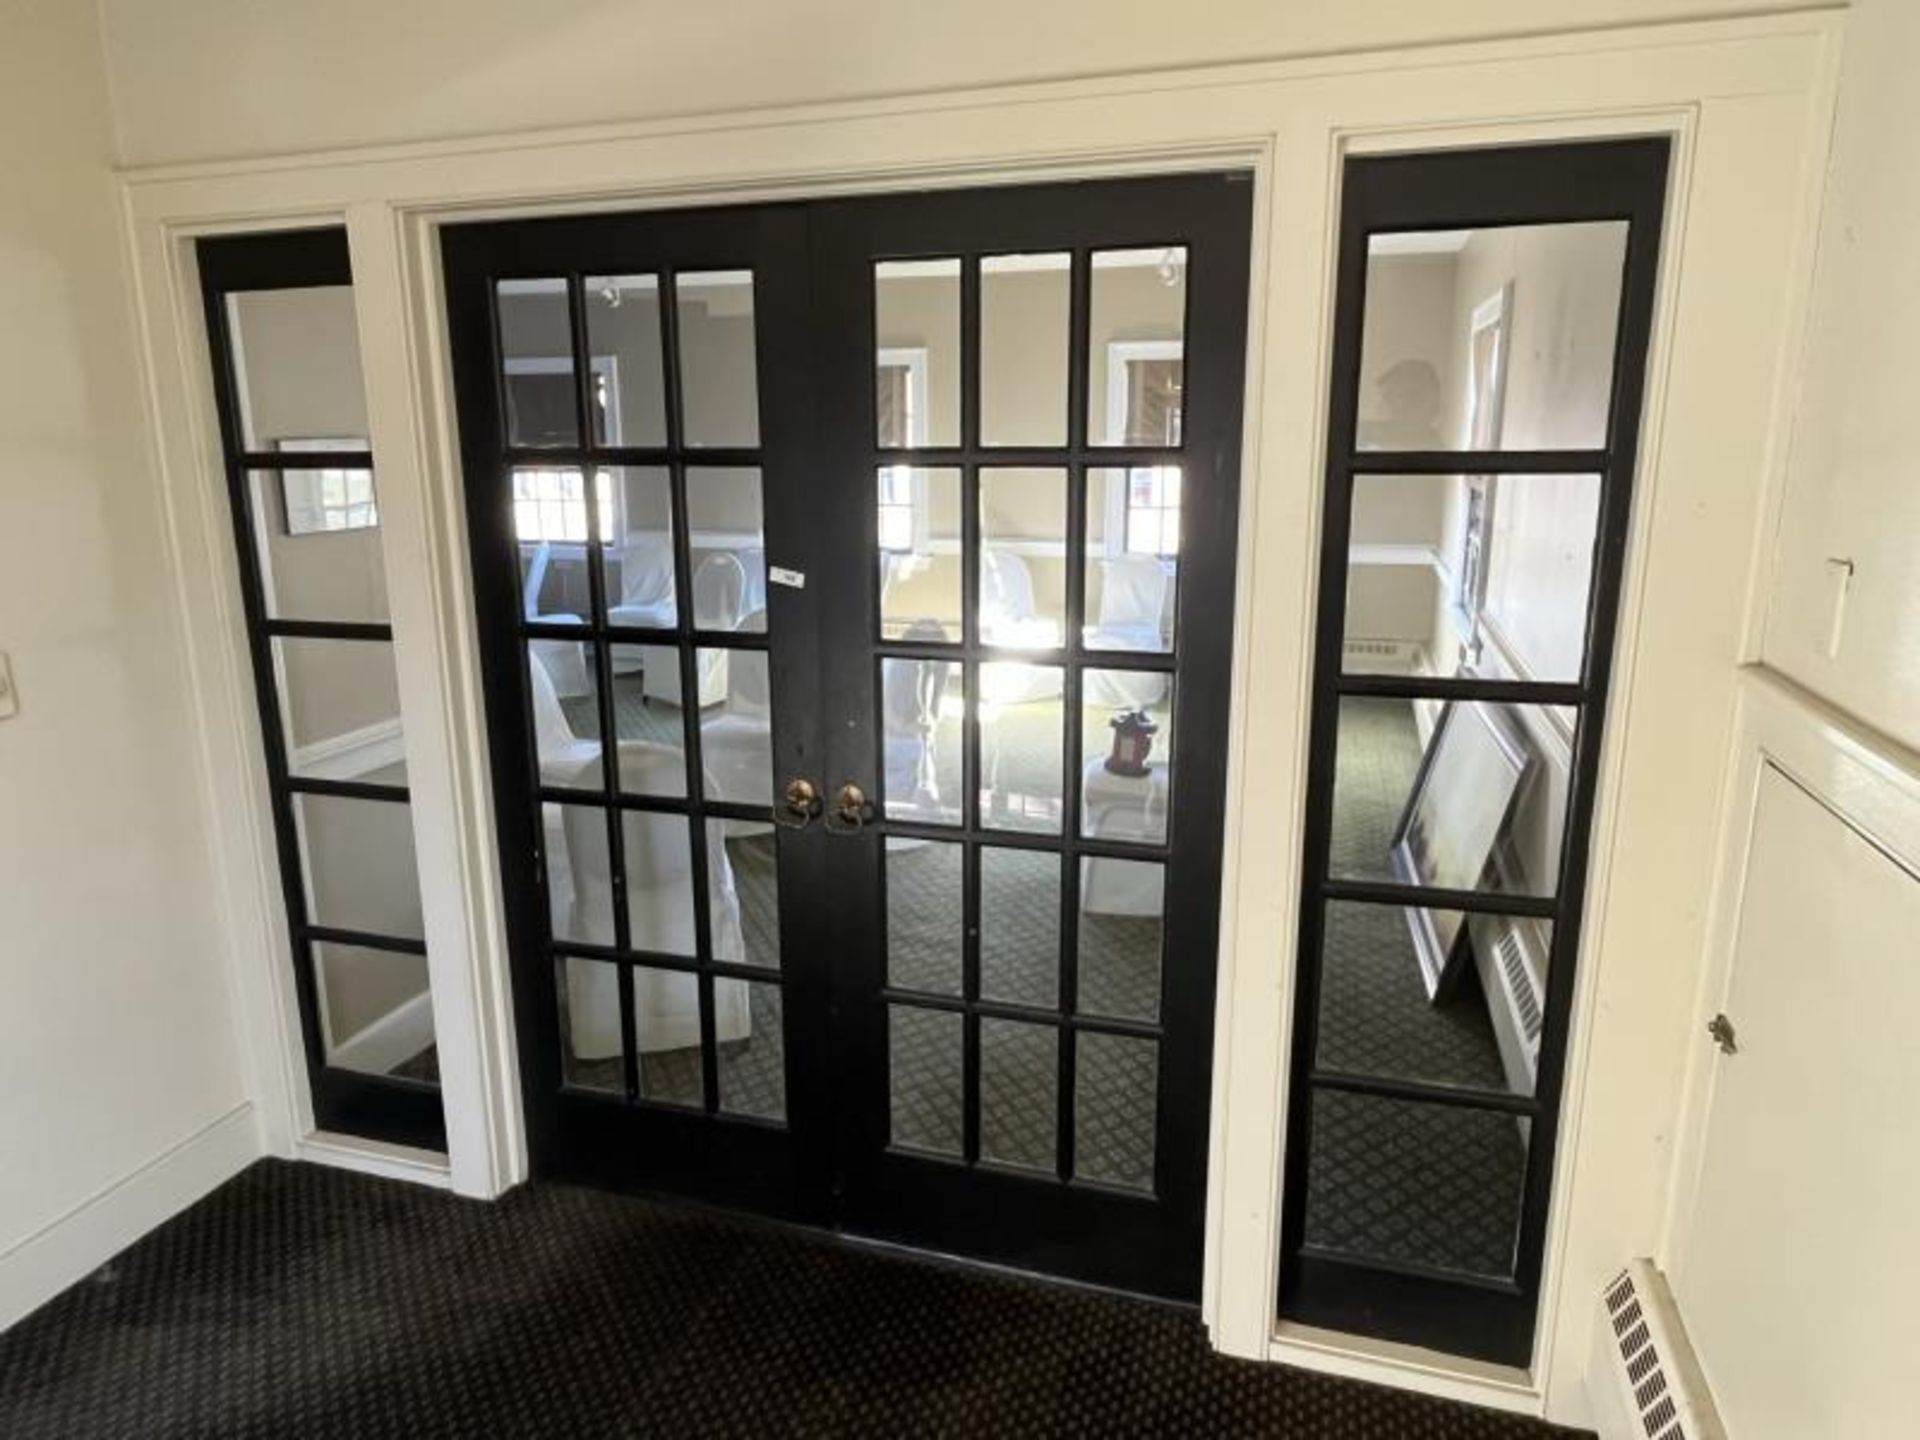 Double Glass Panel Doors, 30" Each Door Upstairs With Side Windows Measure 16.5" x 79.75"; 30" x